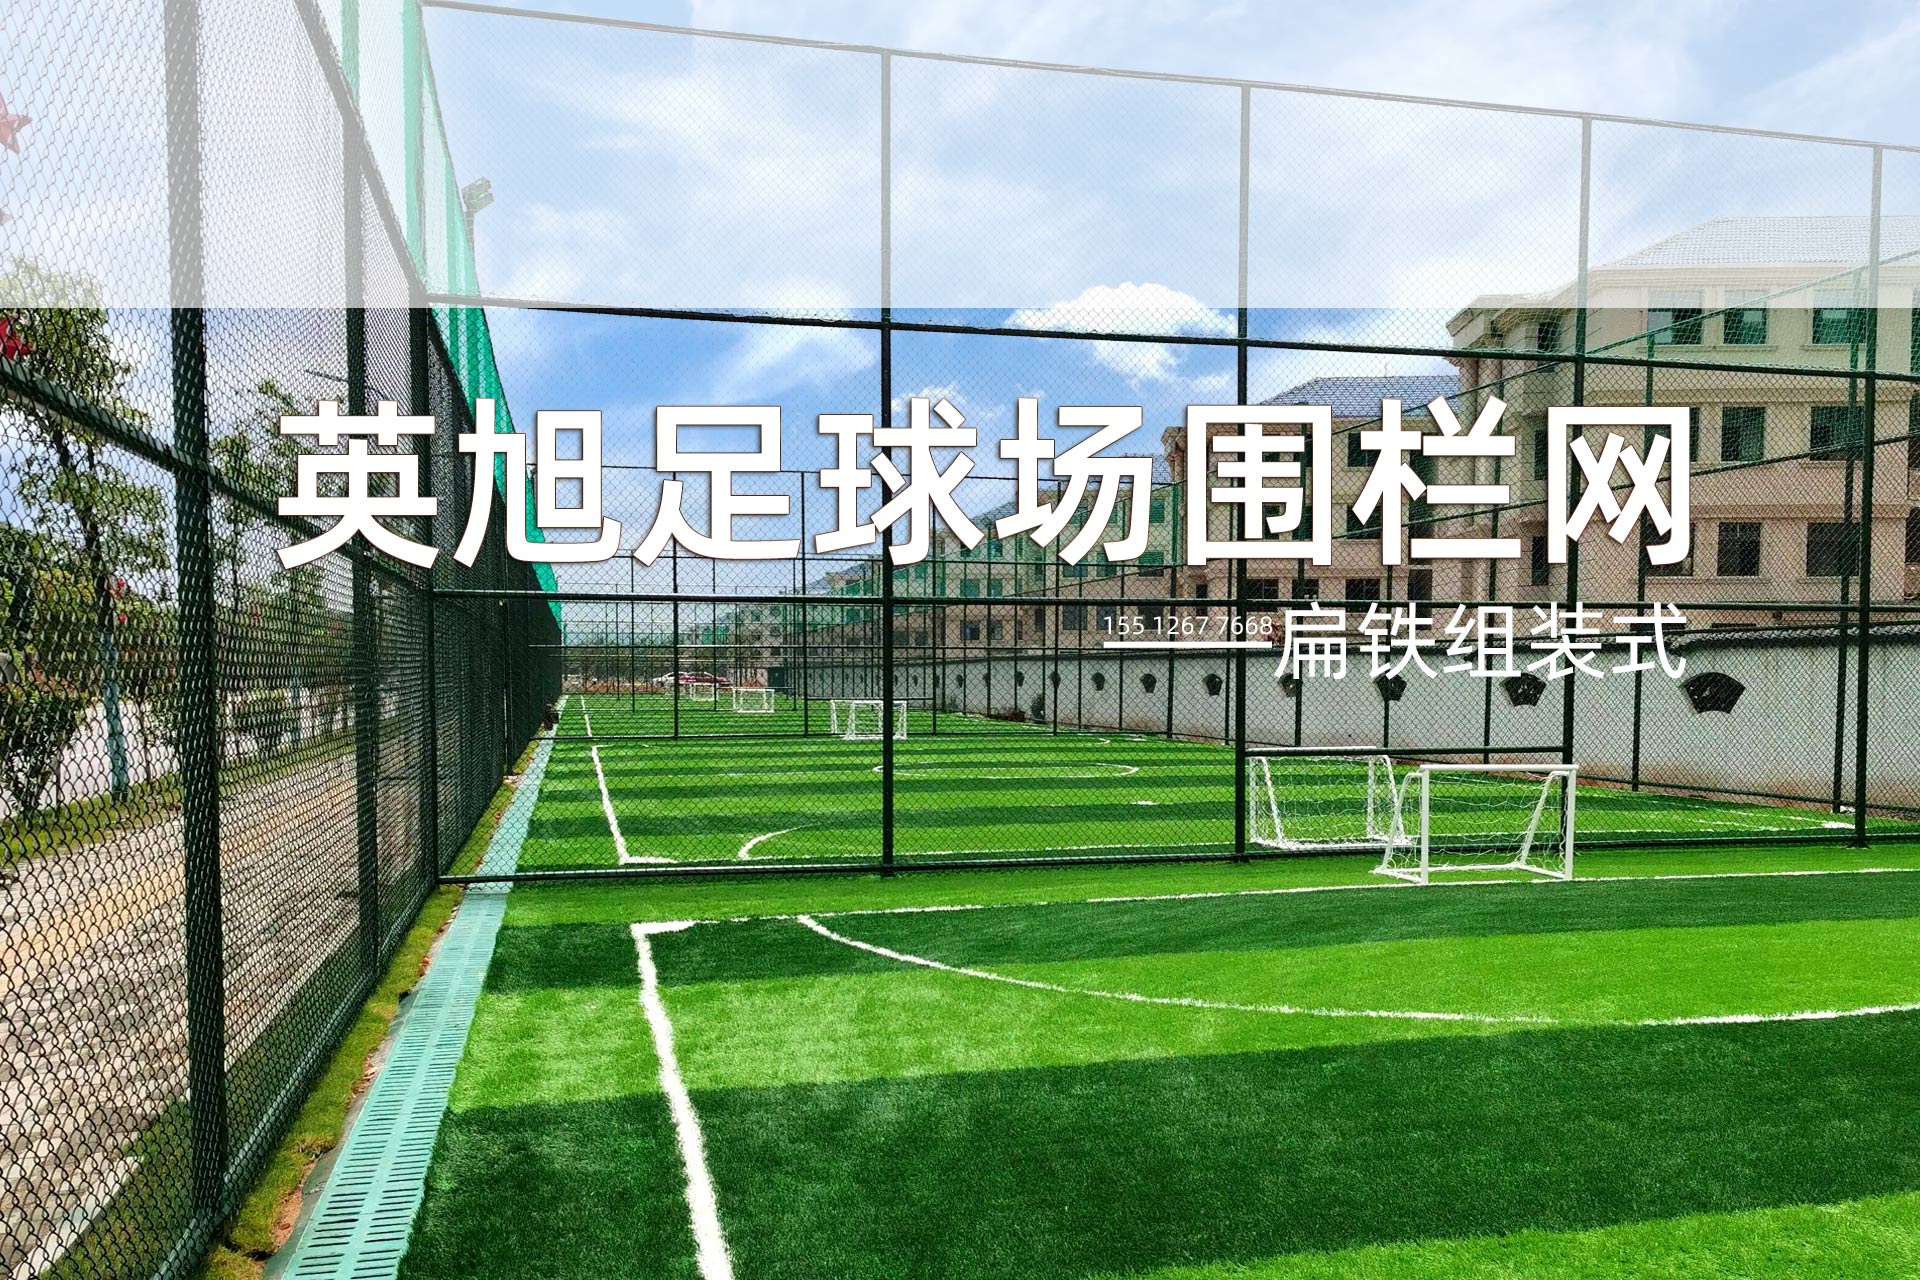 扁铁组装式足球场组装式围栏网